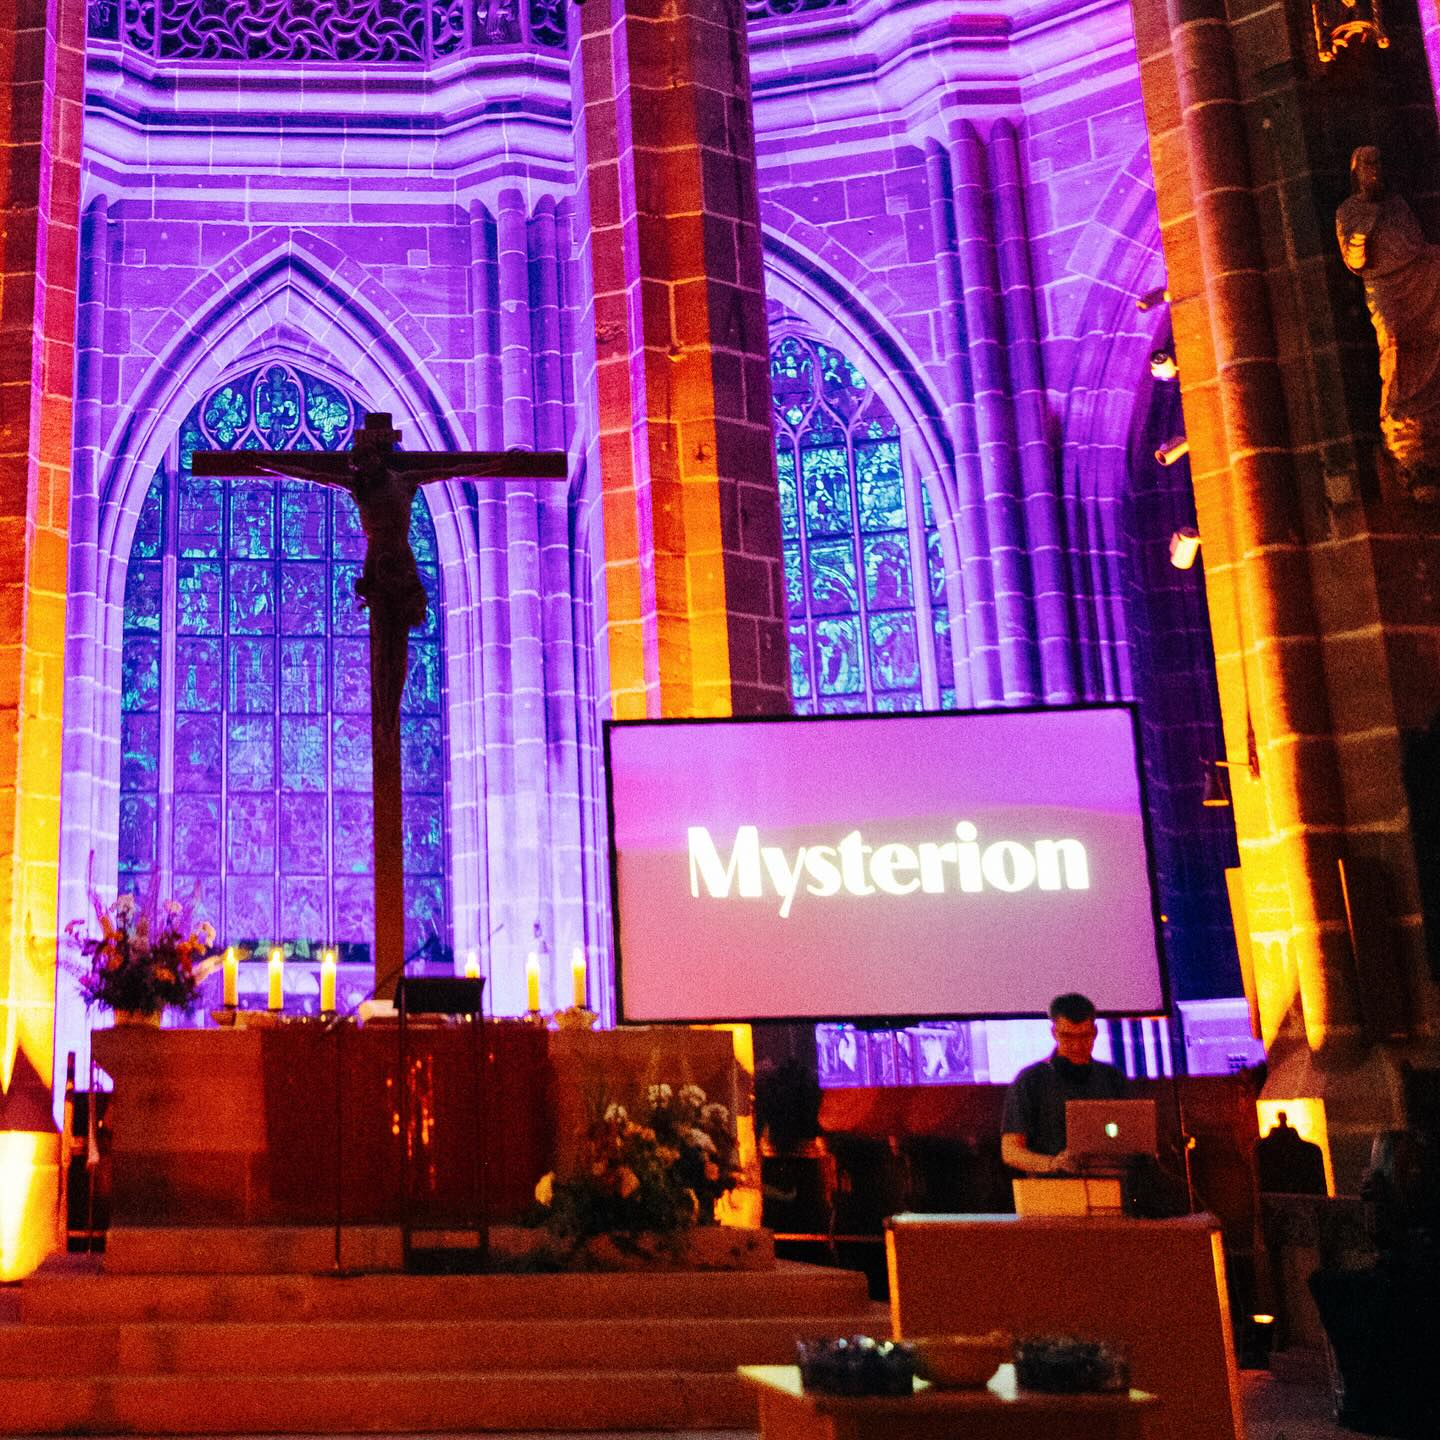 Eine alte Kirche in pinkes Licht getaucht. Auf einem großen Bildschirm steht "Mysterion". Davor legt ein DJ auf.